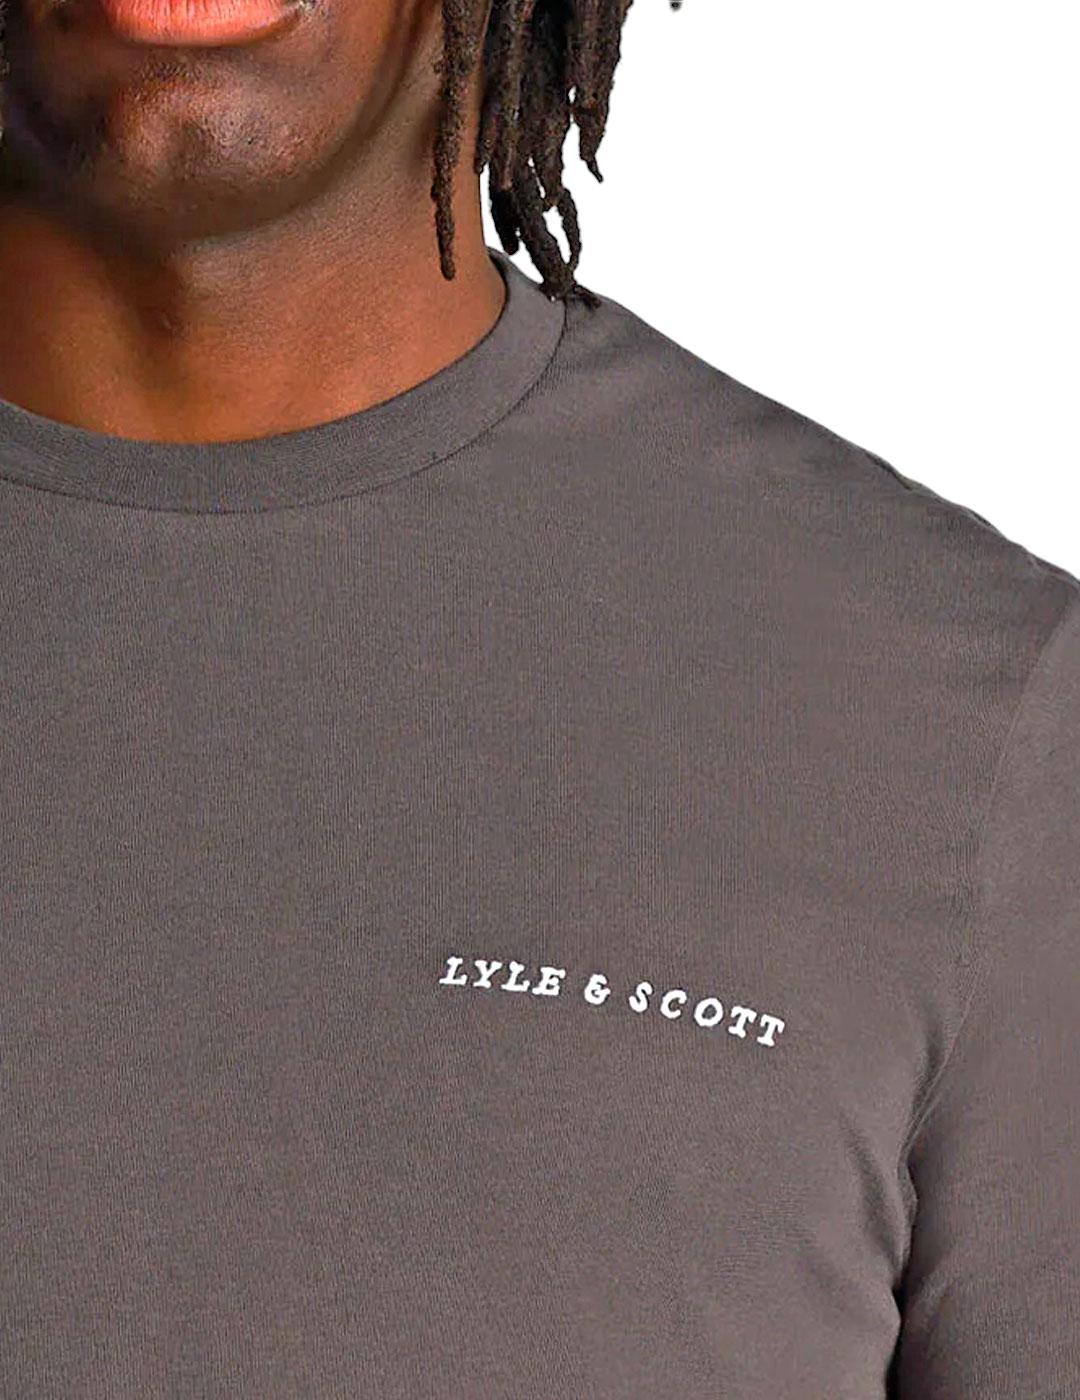 Camiseta básica Lyle Scott gris oscura para hombre